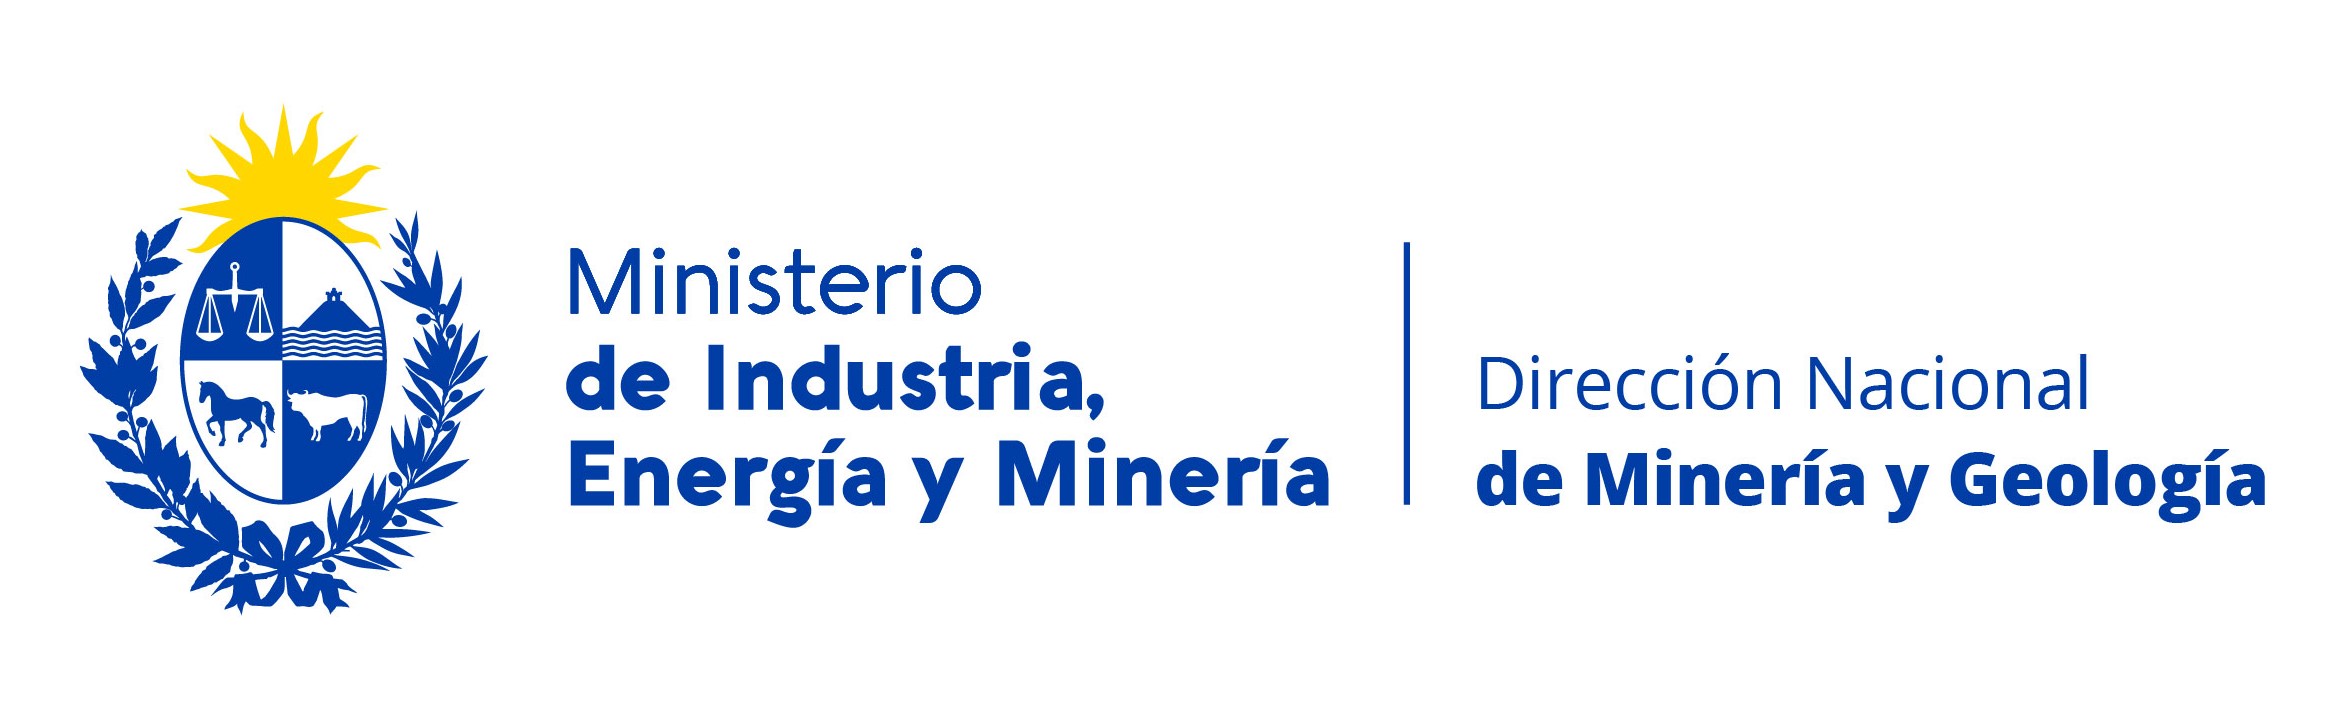 Ministerio de Industria, Energía y Minería. Dirección Nacional de Minería y Geología